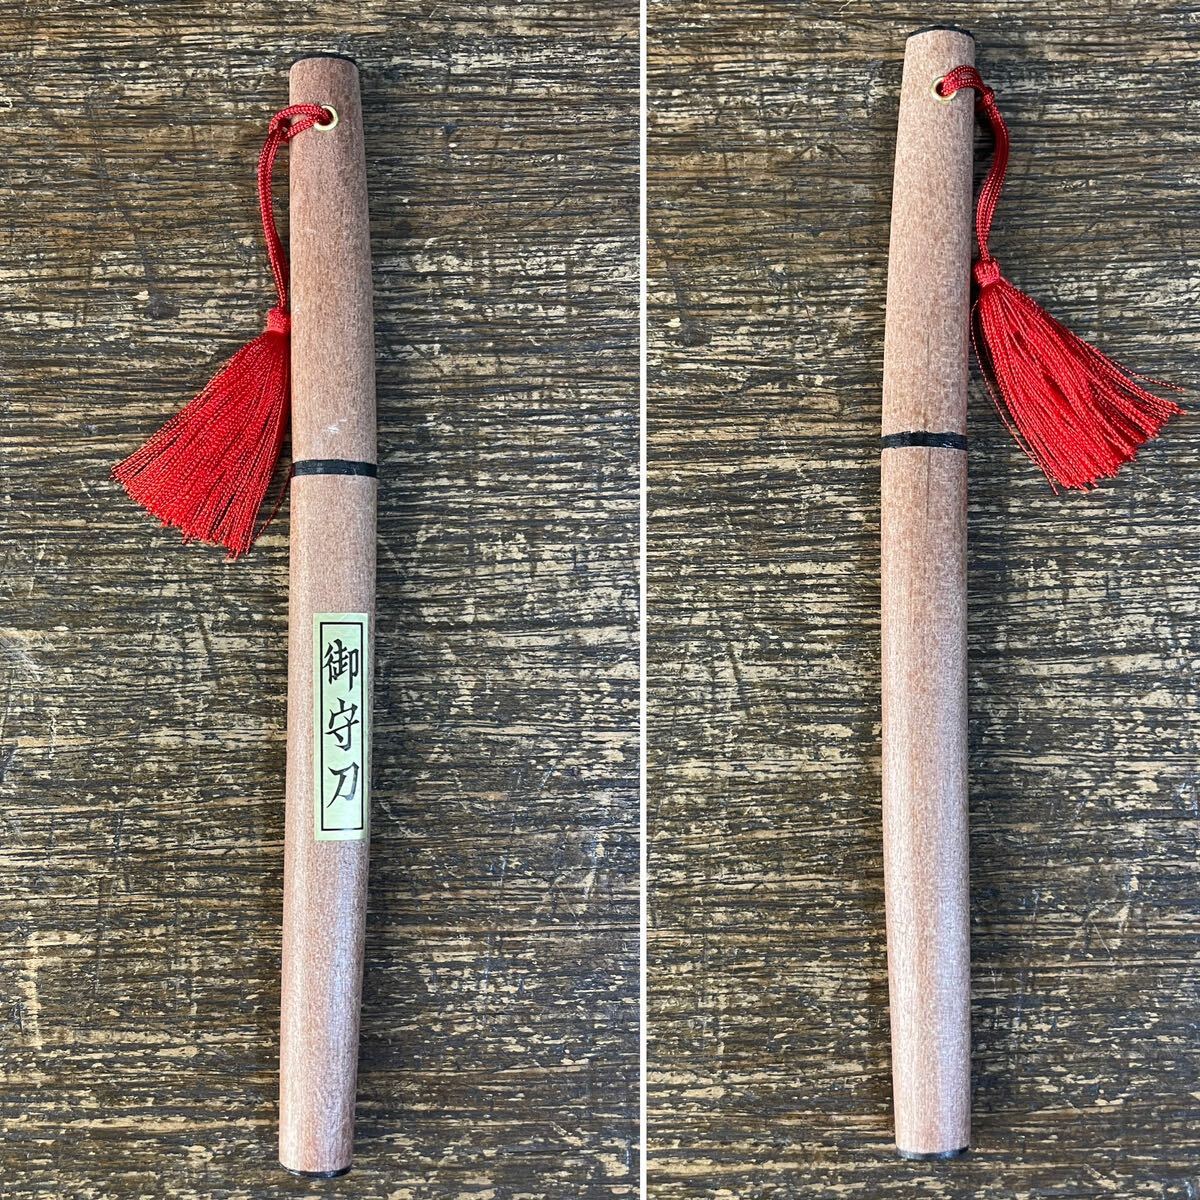  японский меч нож для бумаги общая длина примерно 20cm иммитация меча миниатюра маленький меч японский меч бумага порез . для нож режущий инструмент игрушка сделано в Японии samurai меч -3